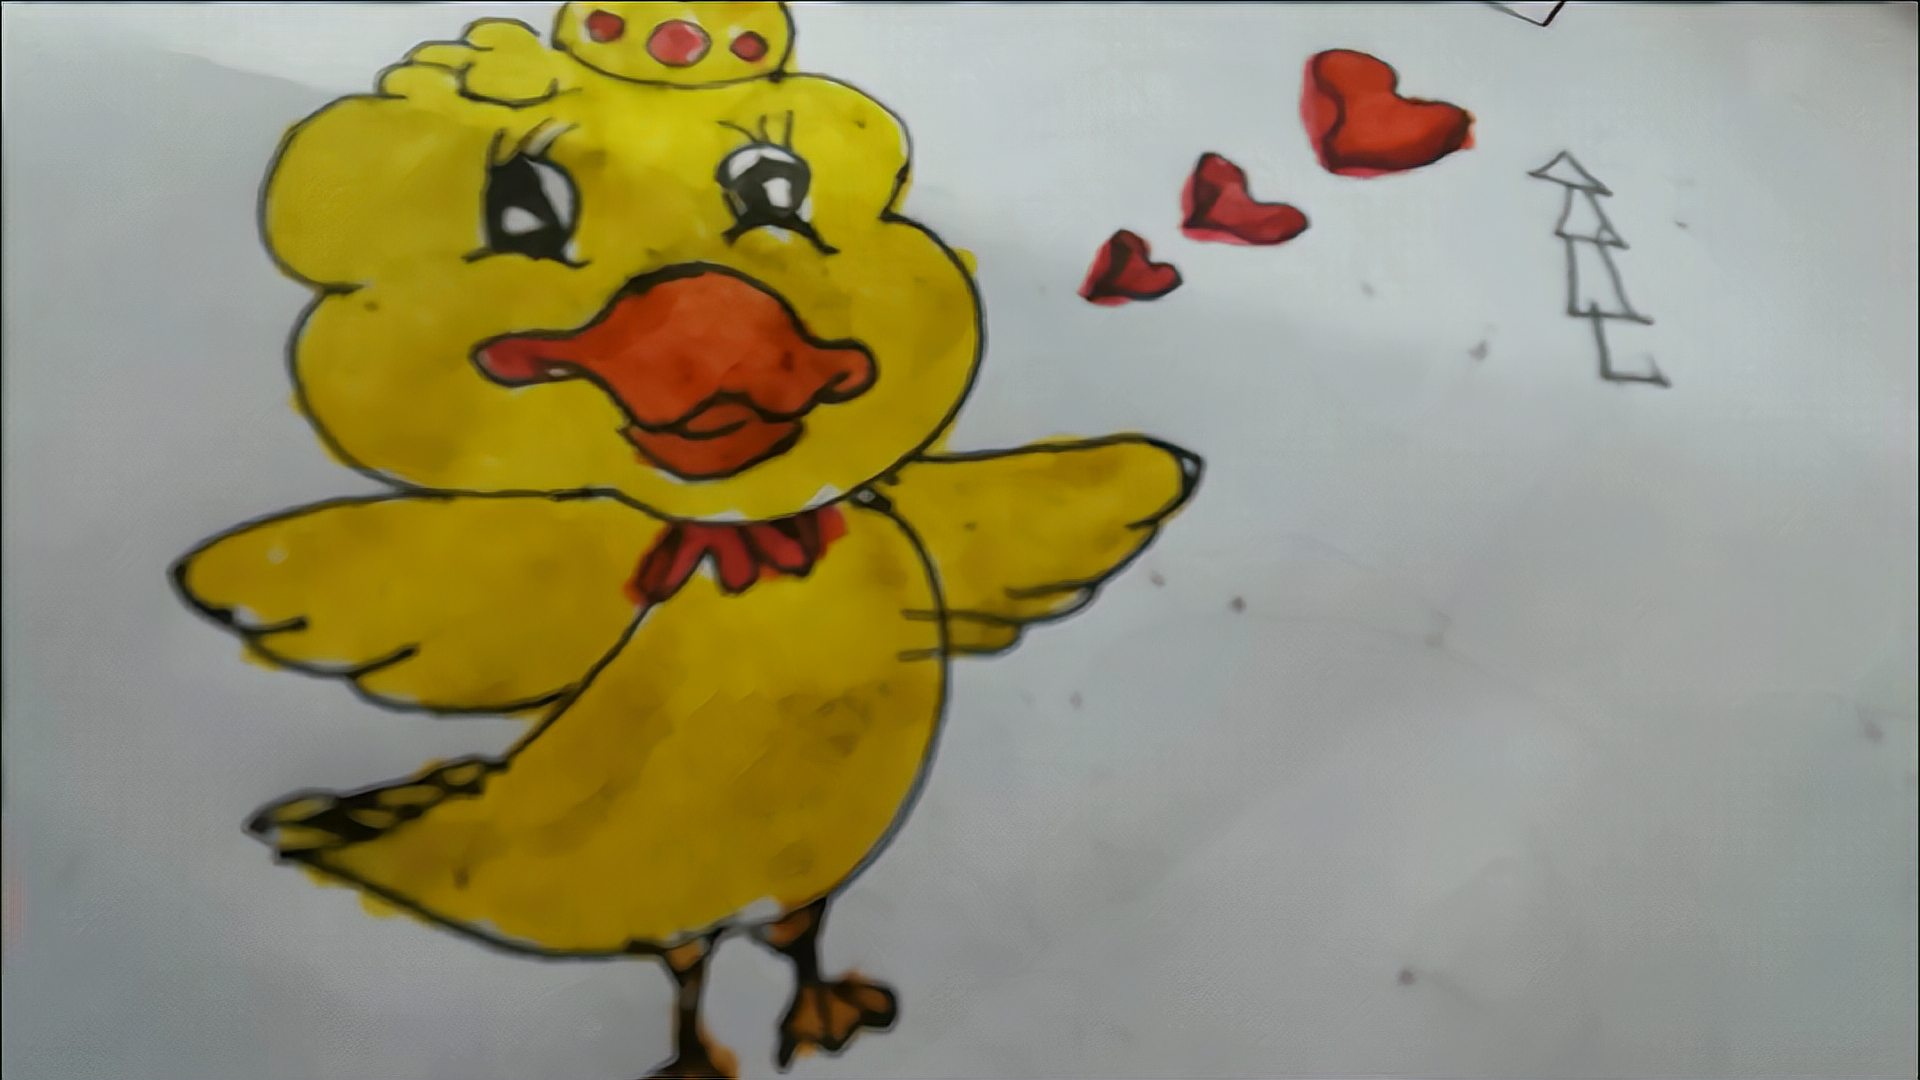 1可爱小鸭:首先将小鸭的脸蛋画出来,再画小鸭的头部,再将身体的轮廓